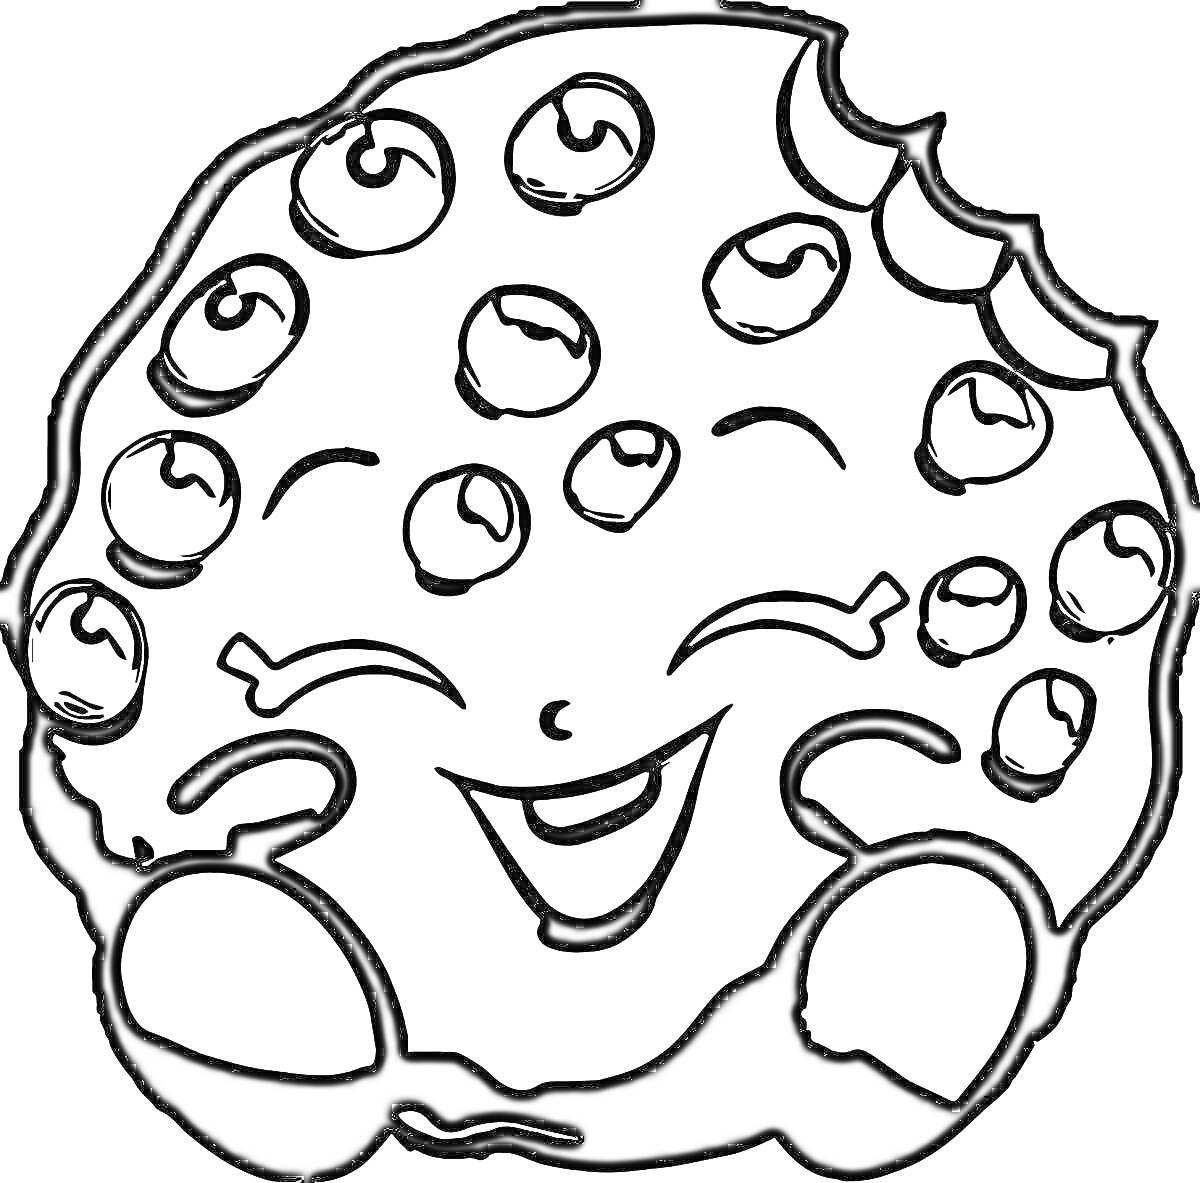 Раскраска Печенье с кусочками шоколада, улыбающееся лицо с закрытыми глазами, окруженное шариками